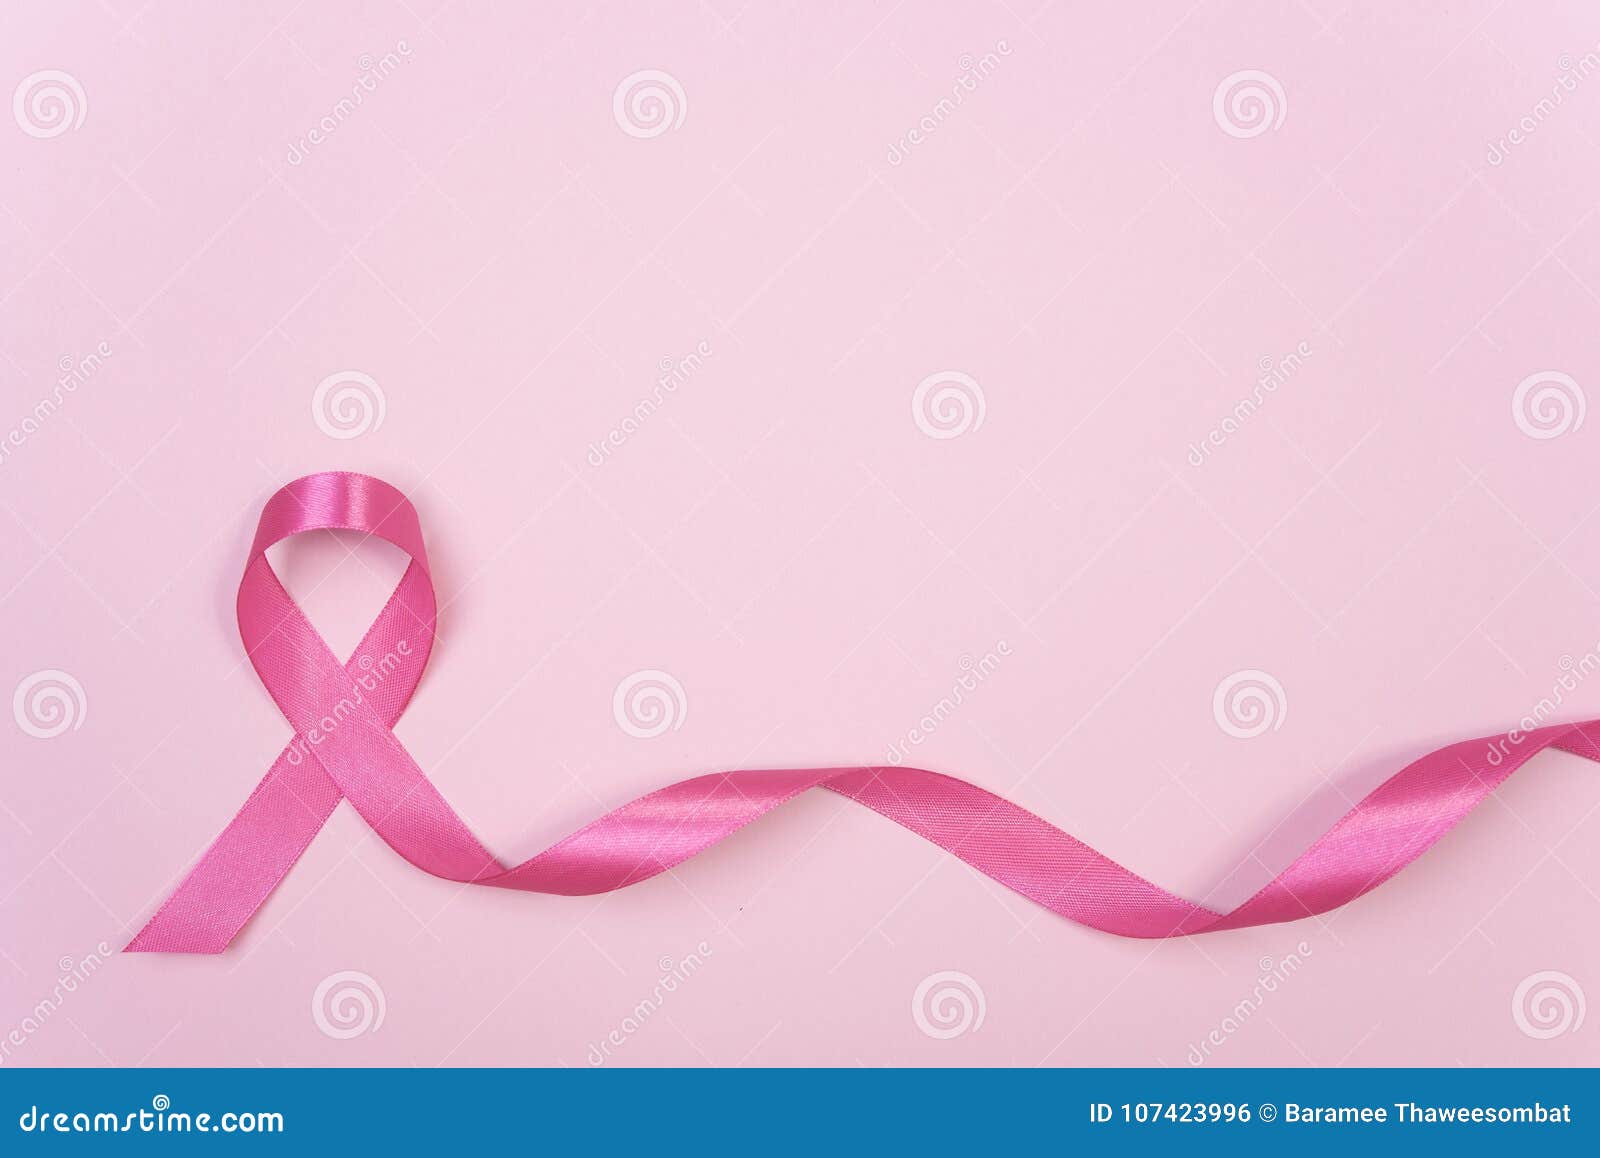 Không gian trống trên tấm nền hồng với hình ảnh nơ hồng cho ung thư vú là điều hoàn hảo để bạn chuẩn bị những thông điệp cần thiết cho công việc của mình. Hãy xem để tìm cách tạo ra một bức ảnh đầy tình yêu thương và ý nghĩa này để chung tay đẩy lùi bệnh ung thư vú.